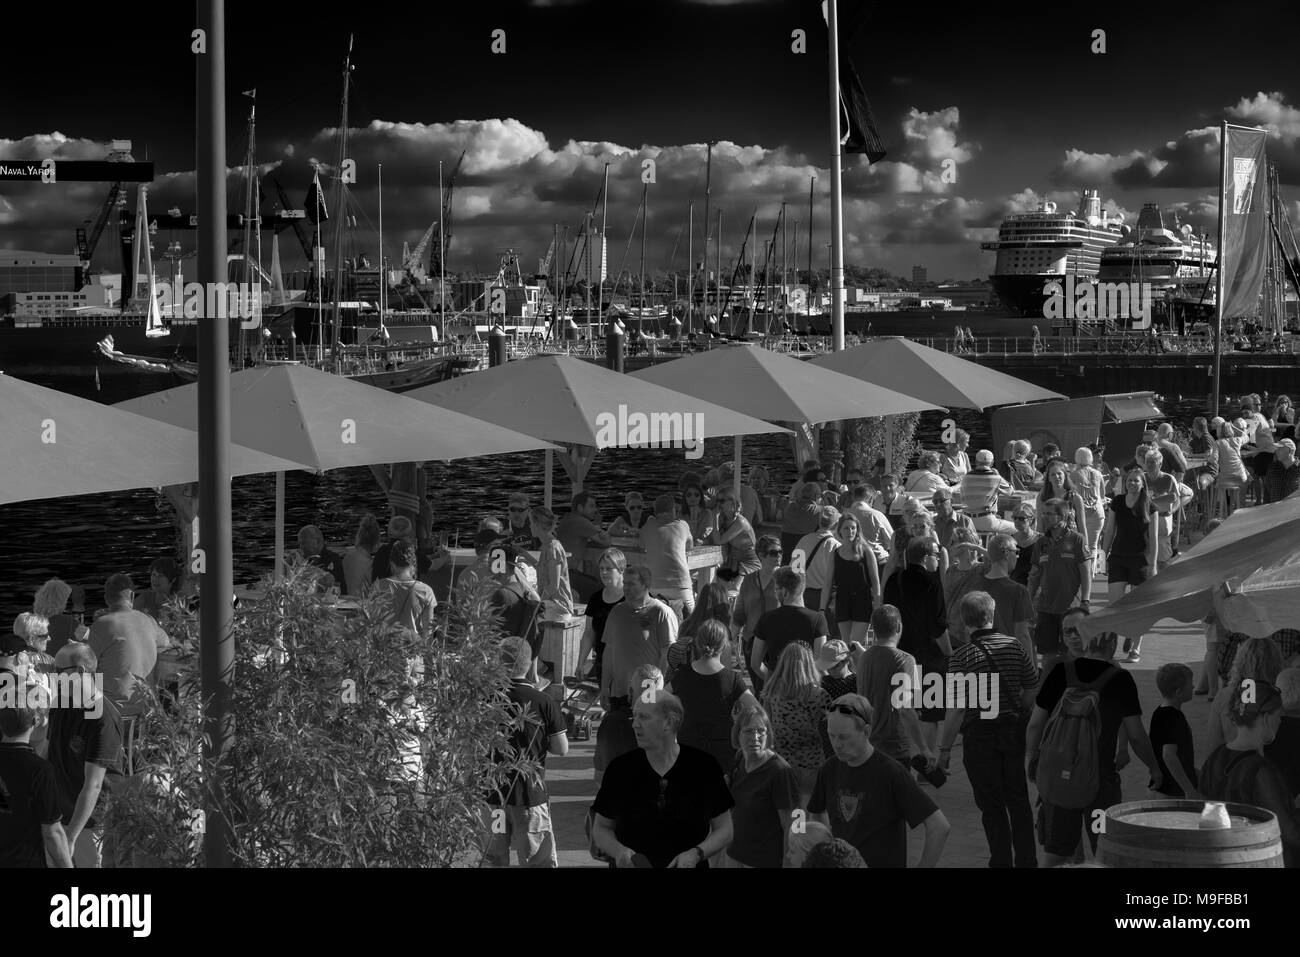 Massen von Menschen an der Kieler Förde während der "Kieler Woche" oder "Kieler Woche", die weltweit größte Segelveranstaltung, Kiel, Schleswig-Holstein, Deutschland Stockfoto